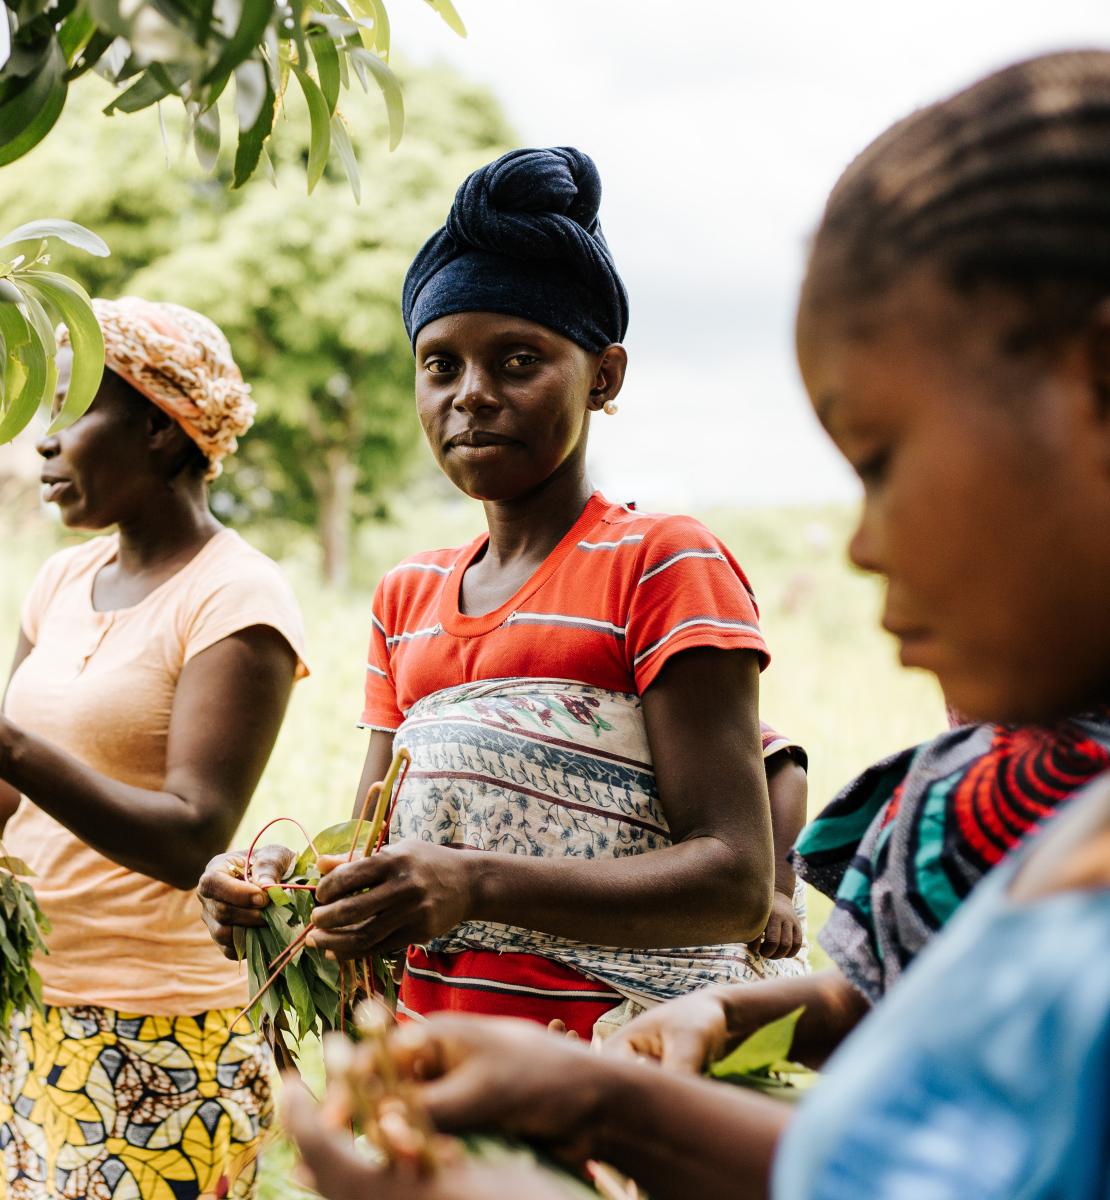 Trois jeunes femmes récoltent des produits agricoles dans un champ.